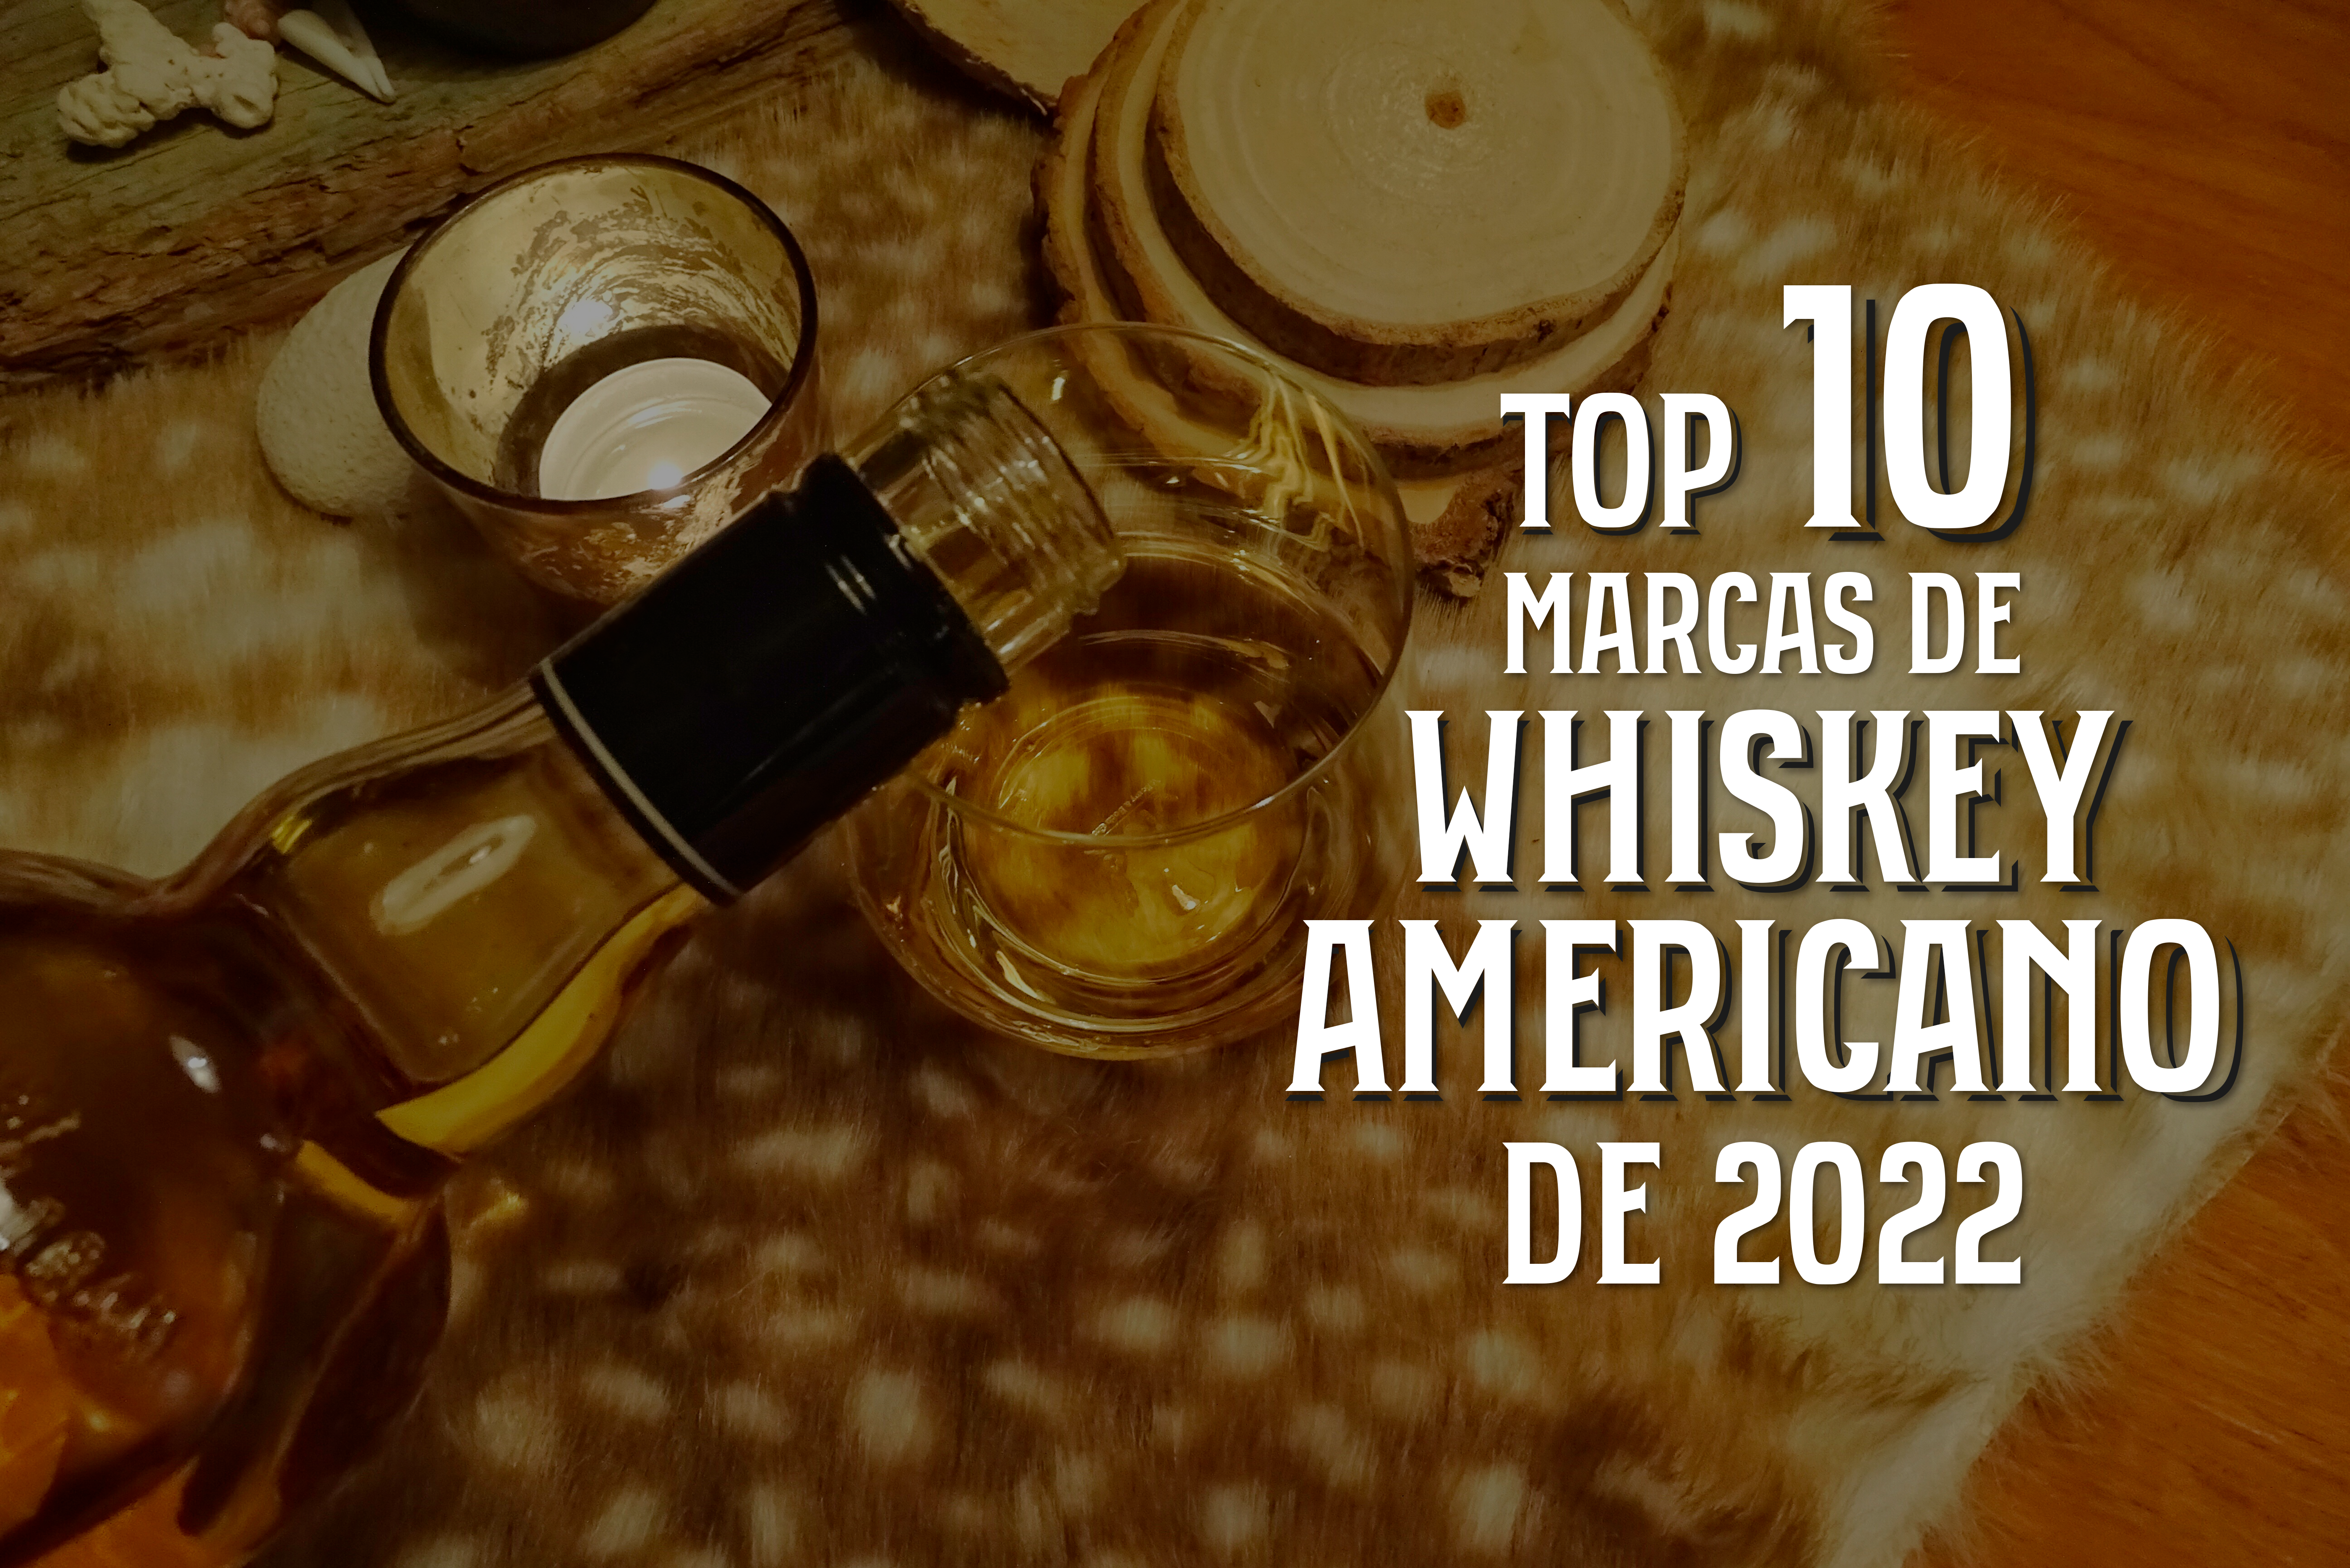 Top 10 Marcas de Whisky Americano de 2022